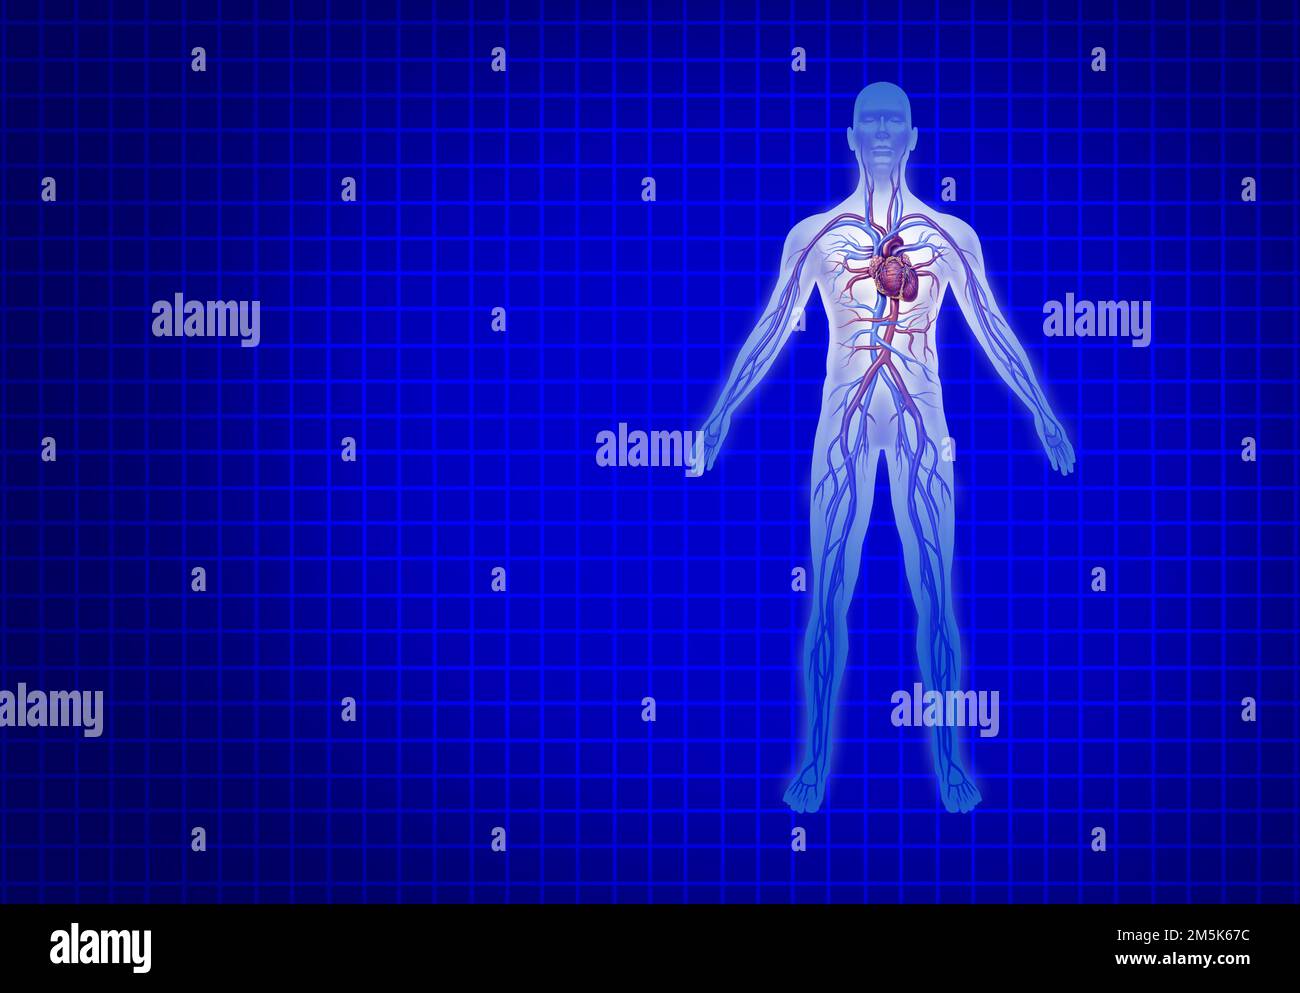 Circolazione cardiovascolare umana su sfondo blu con cuore e arterie anatomia da un corpo sano su sfondo blu come una sanità medica Foto Stock